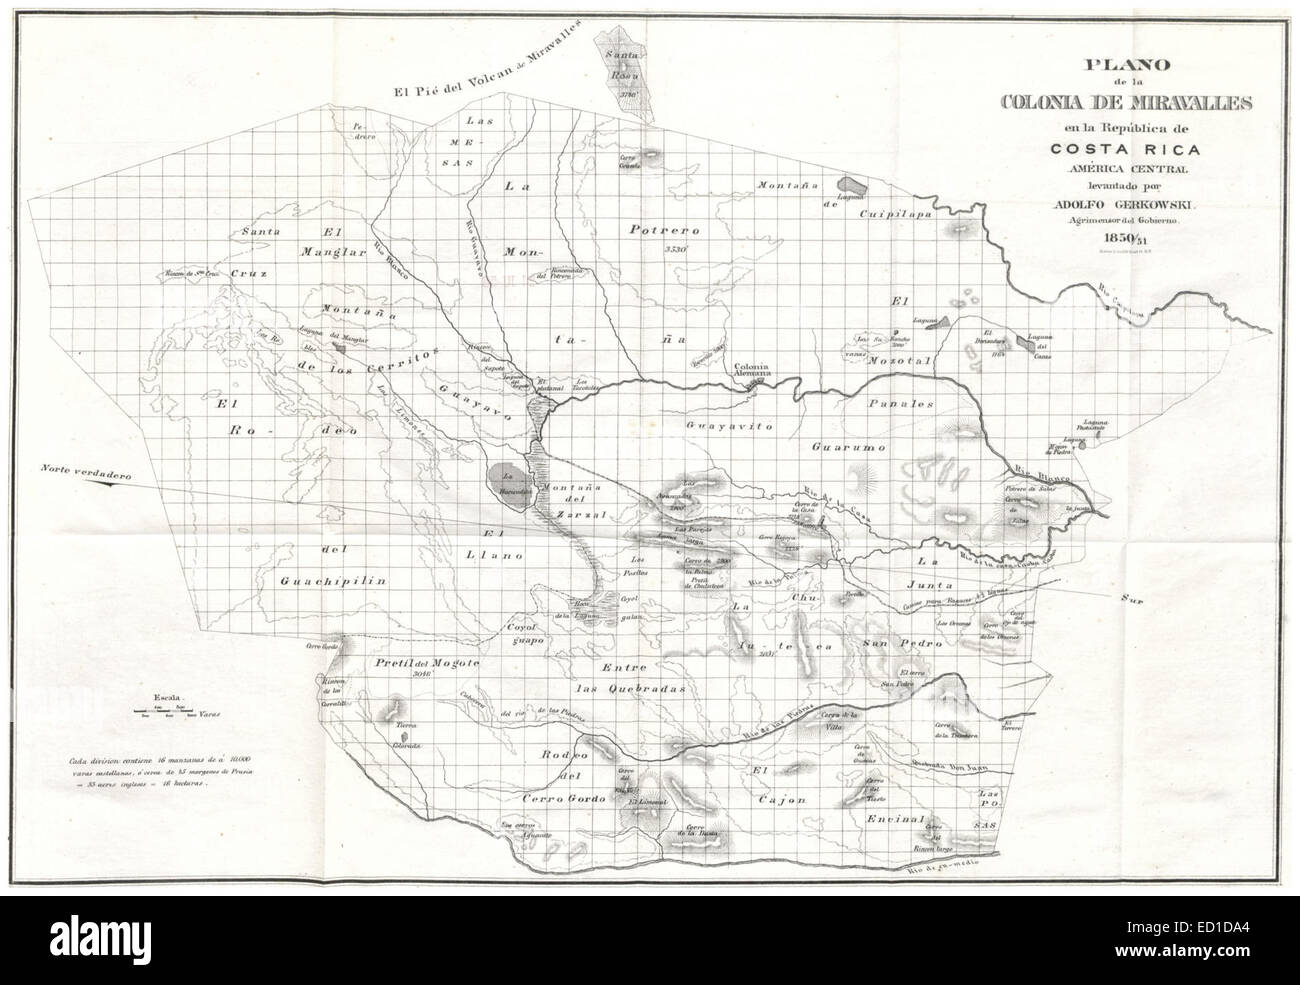 Plano de la Colonia de Miravalles en la República de Costa Rica, America Centrale (1851) Foto Stock